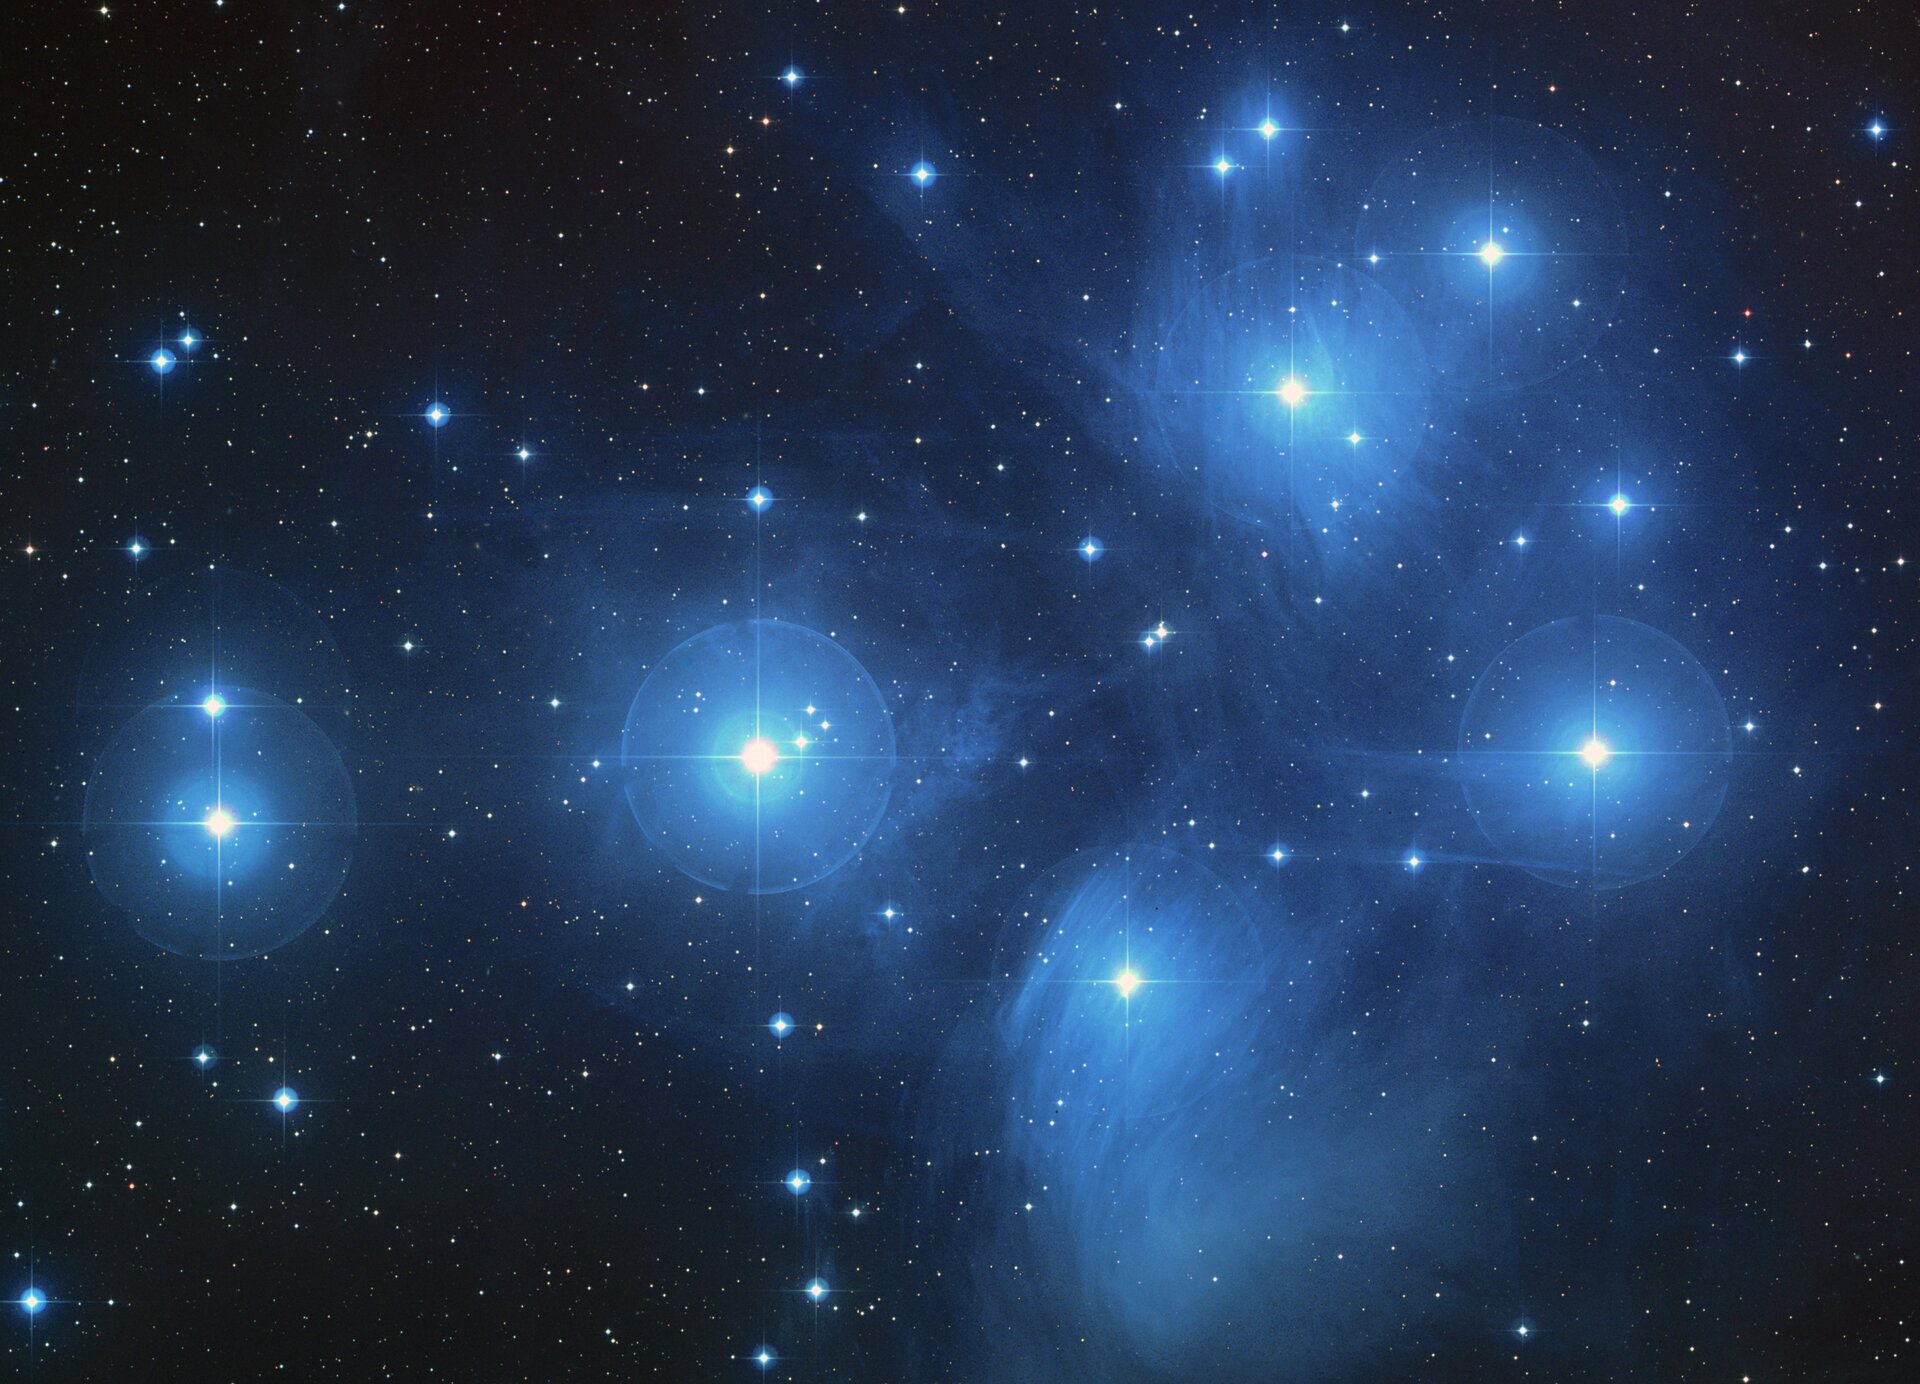 Grafika przedstawia gromadę gwiazd Plejady w Gwiazdozbiorze Byka. Tło czarne. Na grafice widoczne mnóstwo jasnoniebieskich punktów różnej wielkości. Kilka największych wydają się być otoczone niebieską otoczką, łuną.